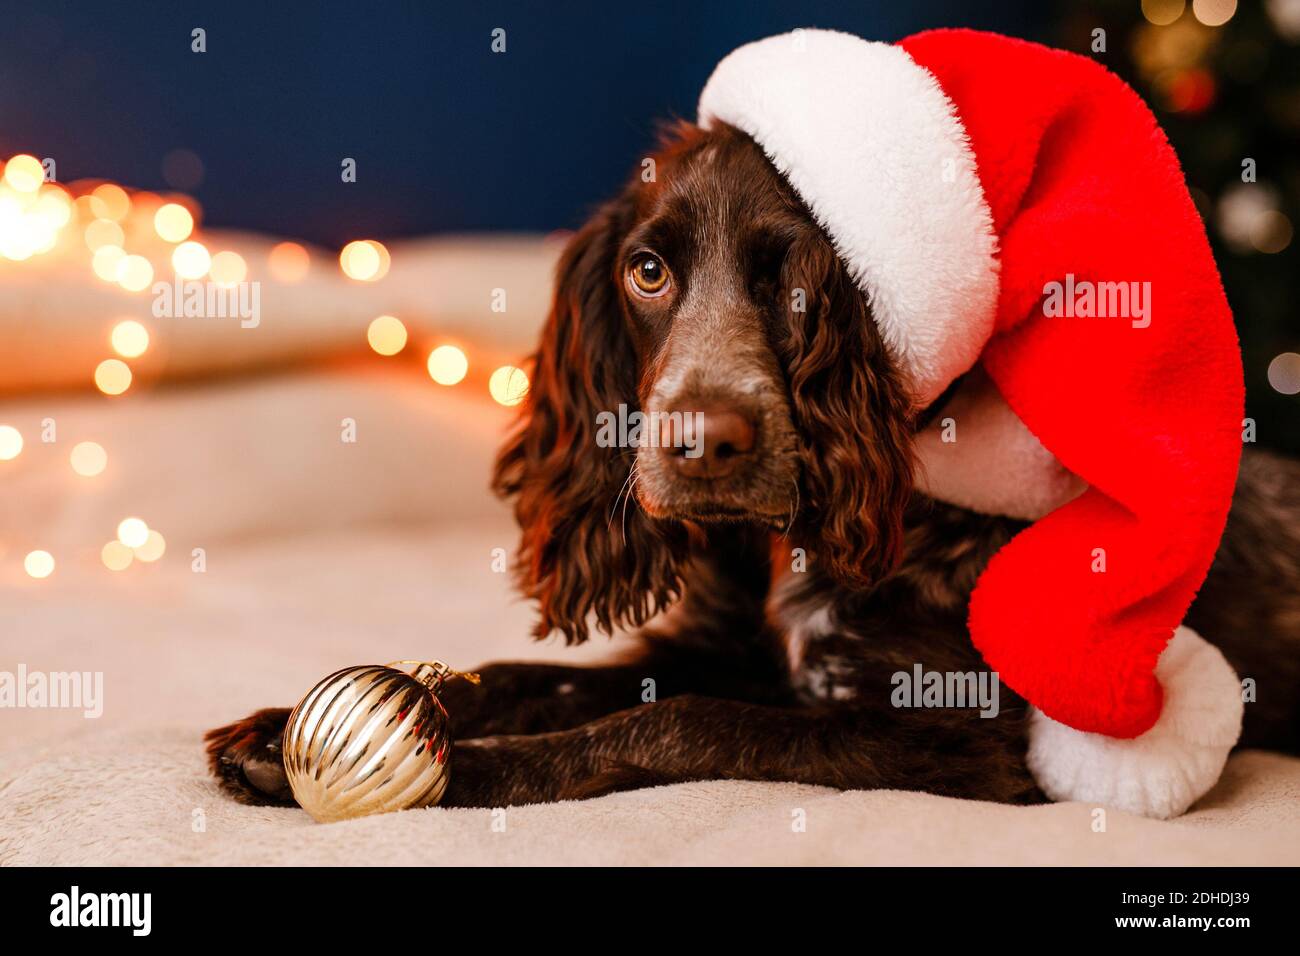 Ein junger russischer Spaniel in einem Weihnachtsmannhut liegt auf dem Bett mit einem Spielzeug in den Zähnen und spielt mit dekorativen roten und goldenen Kugeln. Stockfoto